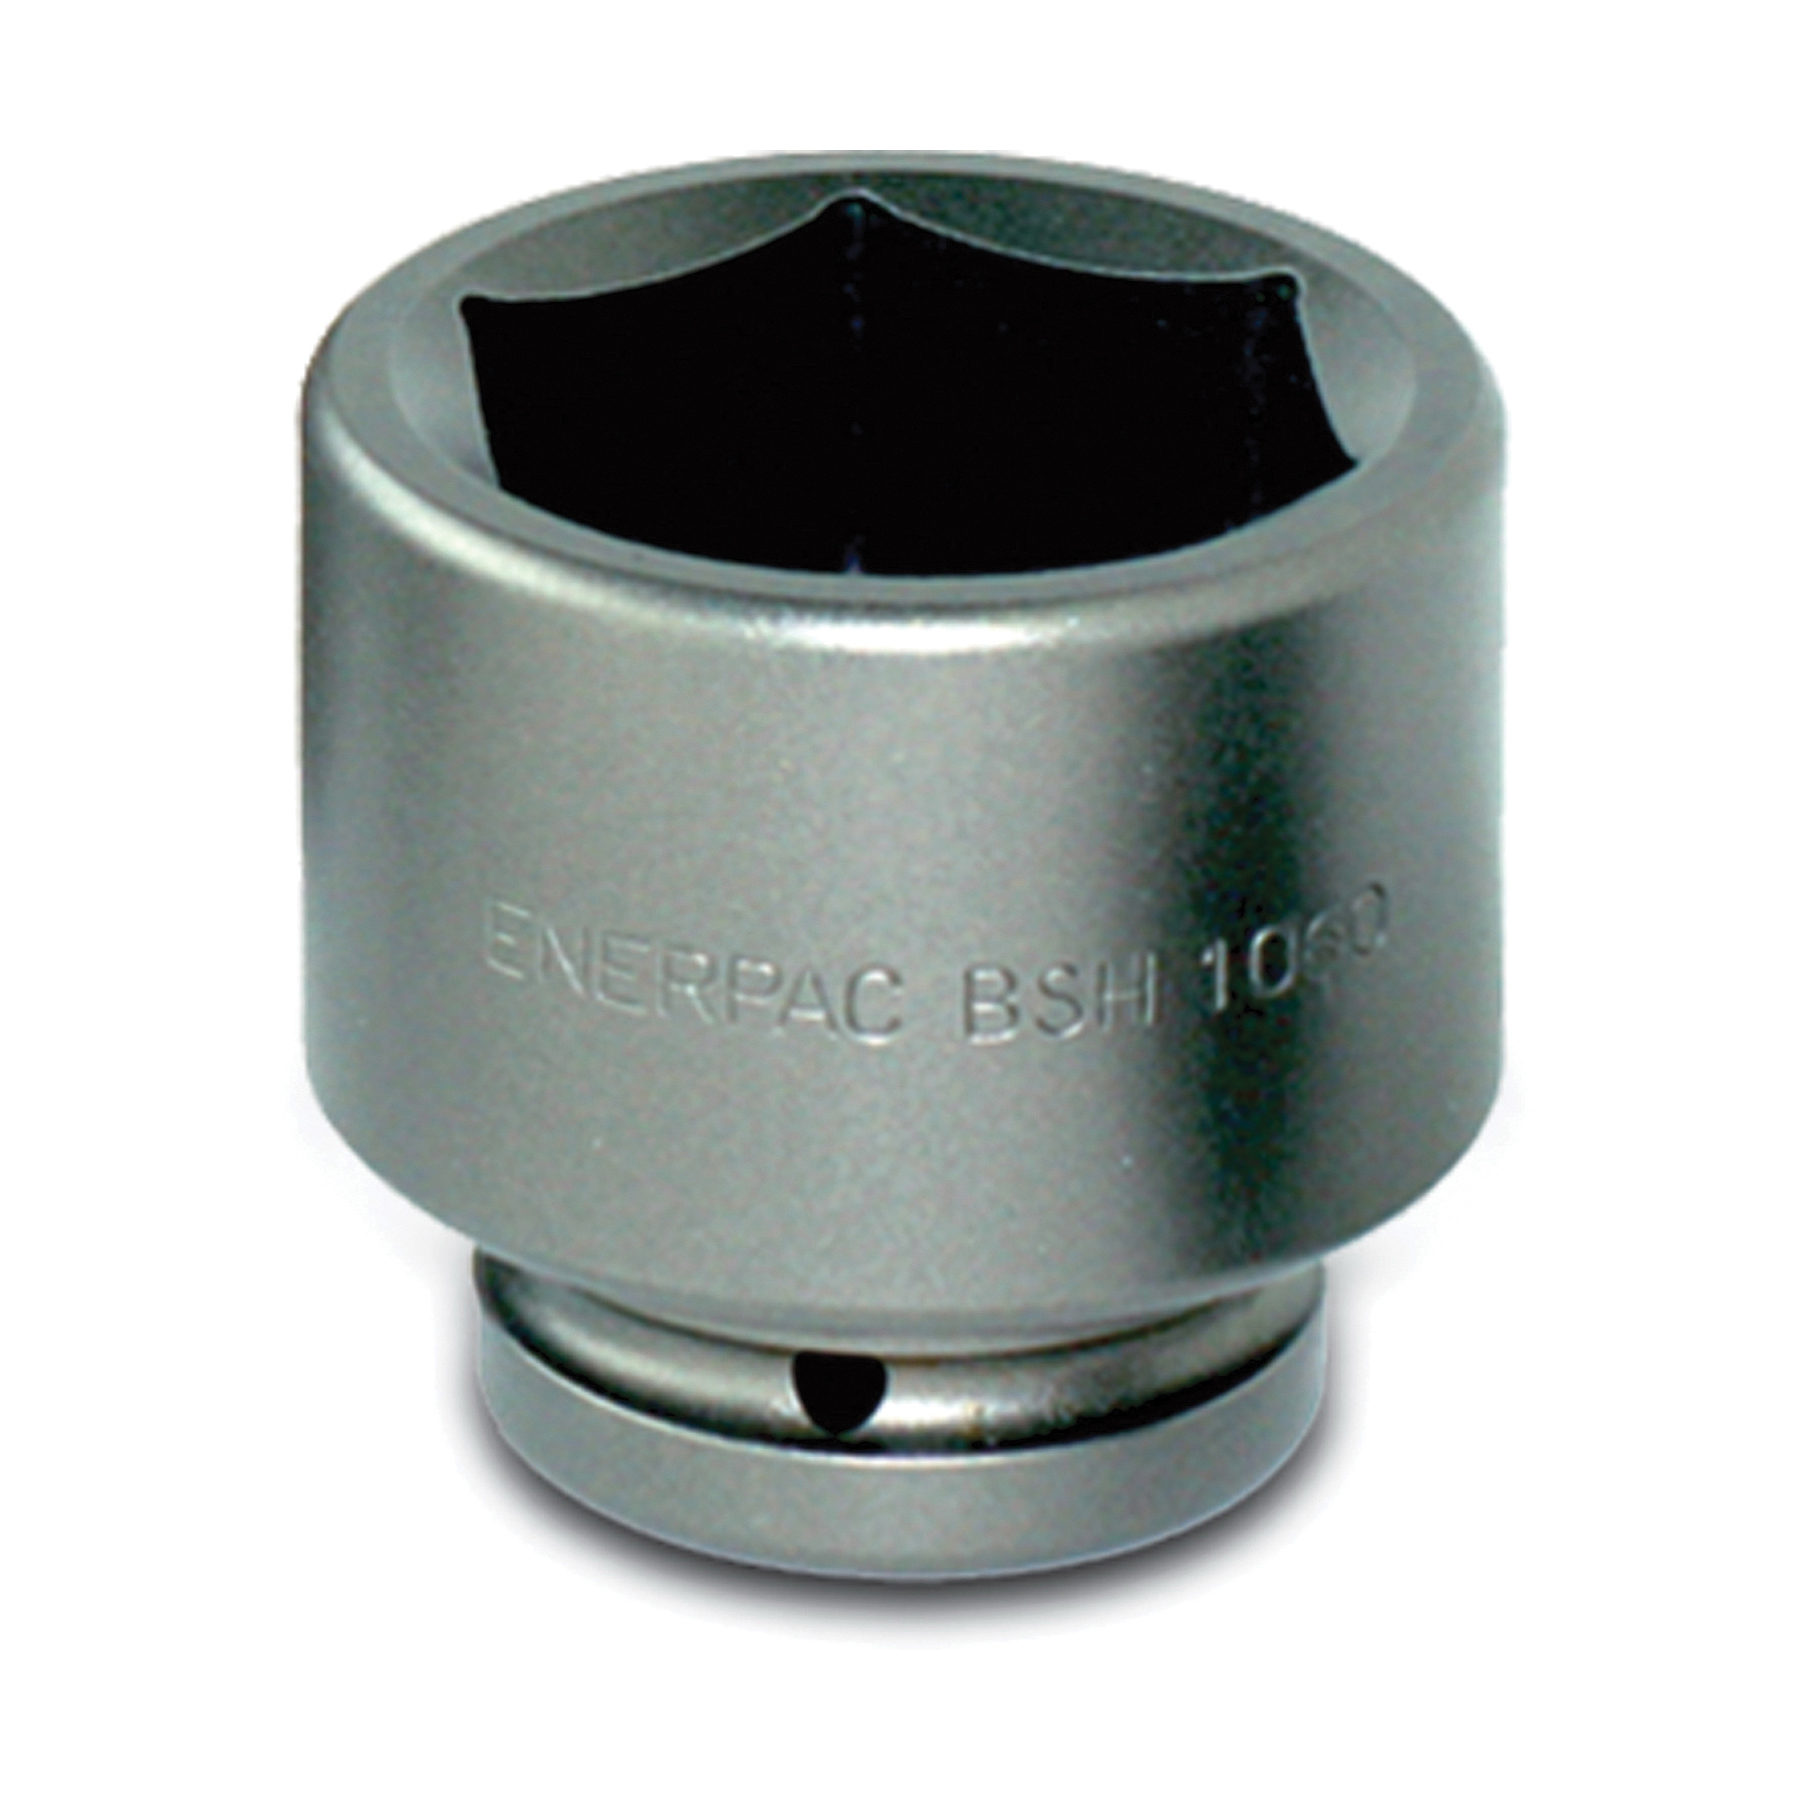 Enerpac® BSH10225 Heavy Duty Standard Socket, 1 in Square Drive, 2-1/4 in Hex Socket, 6-Point